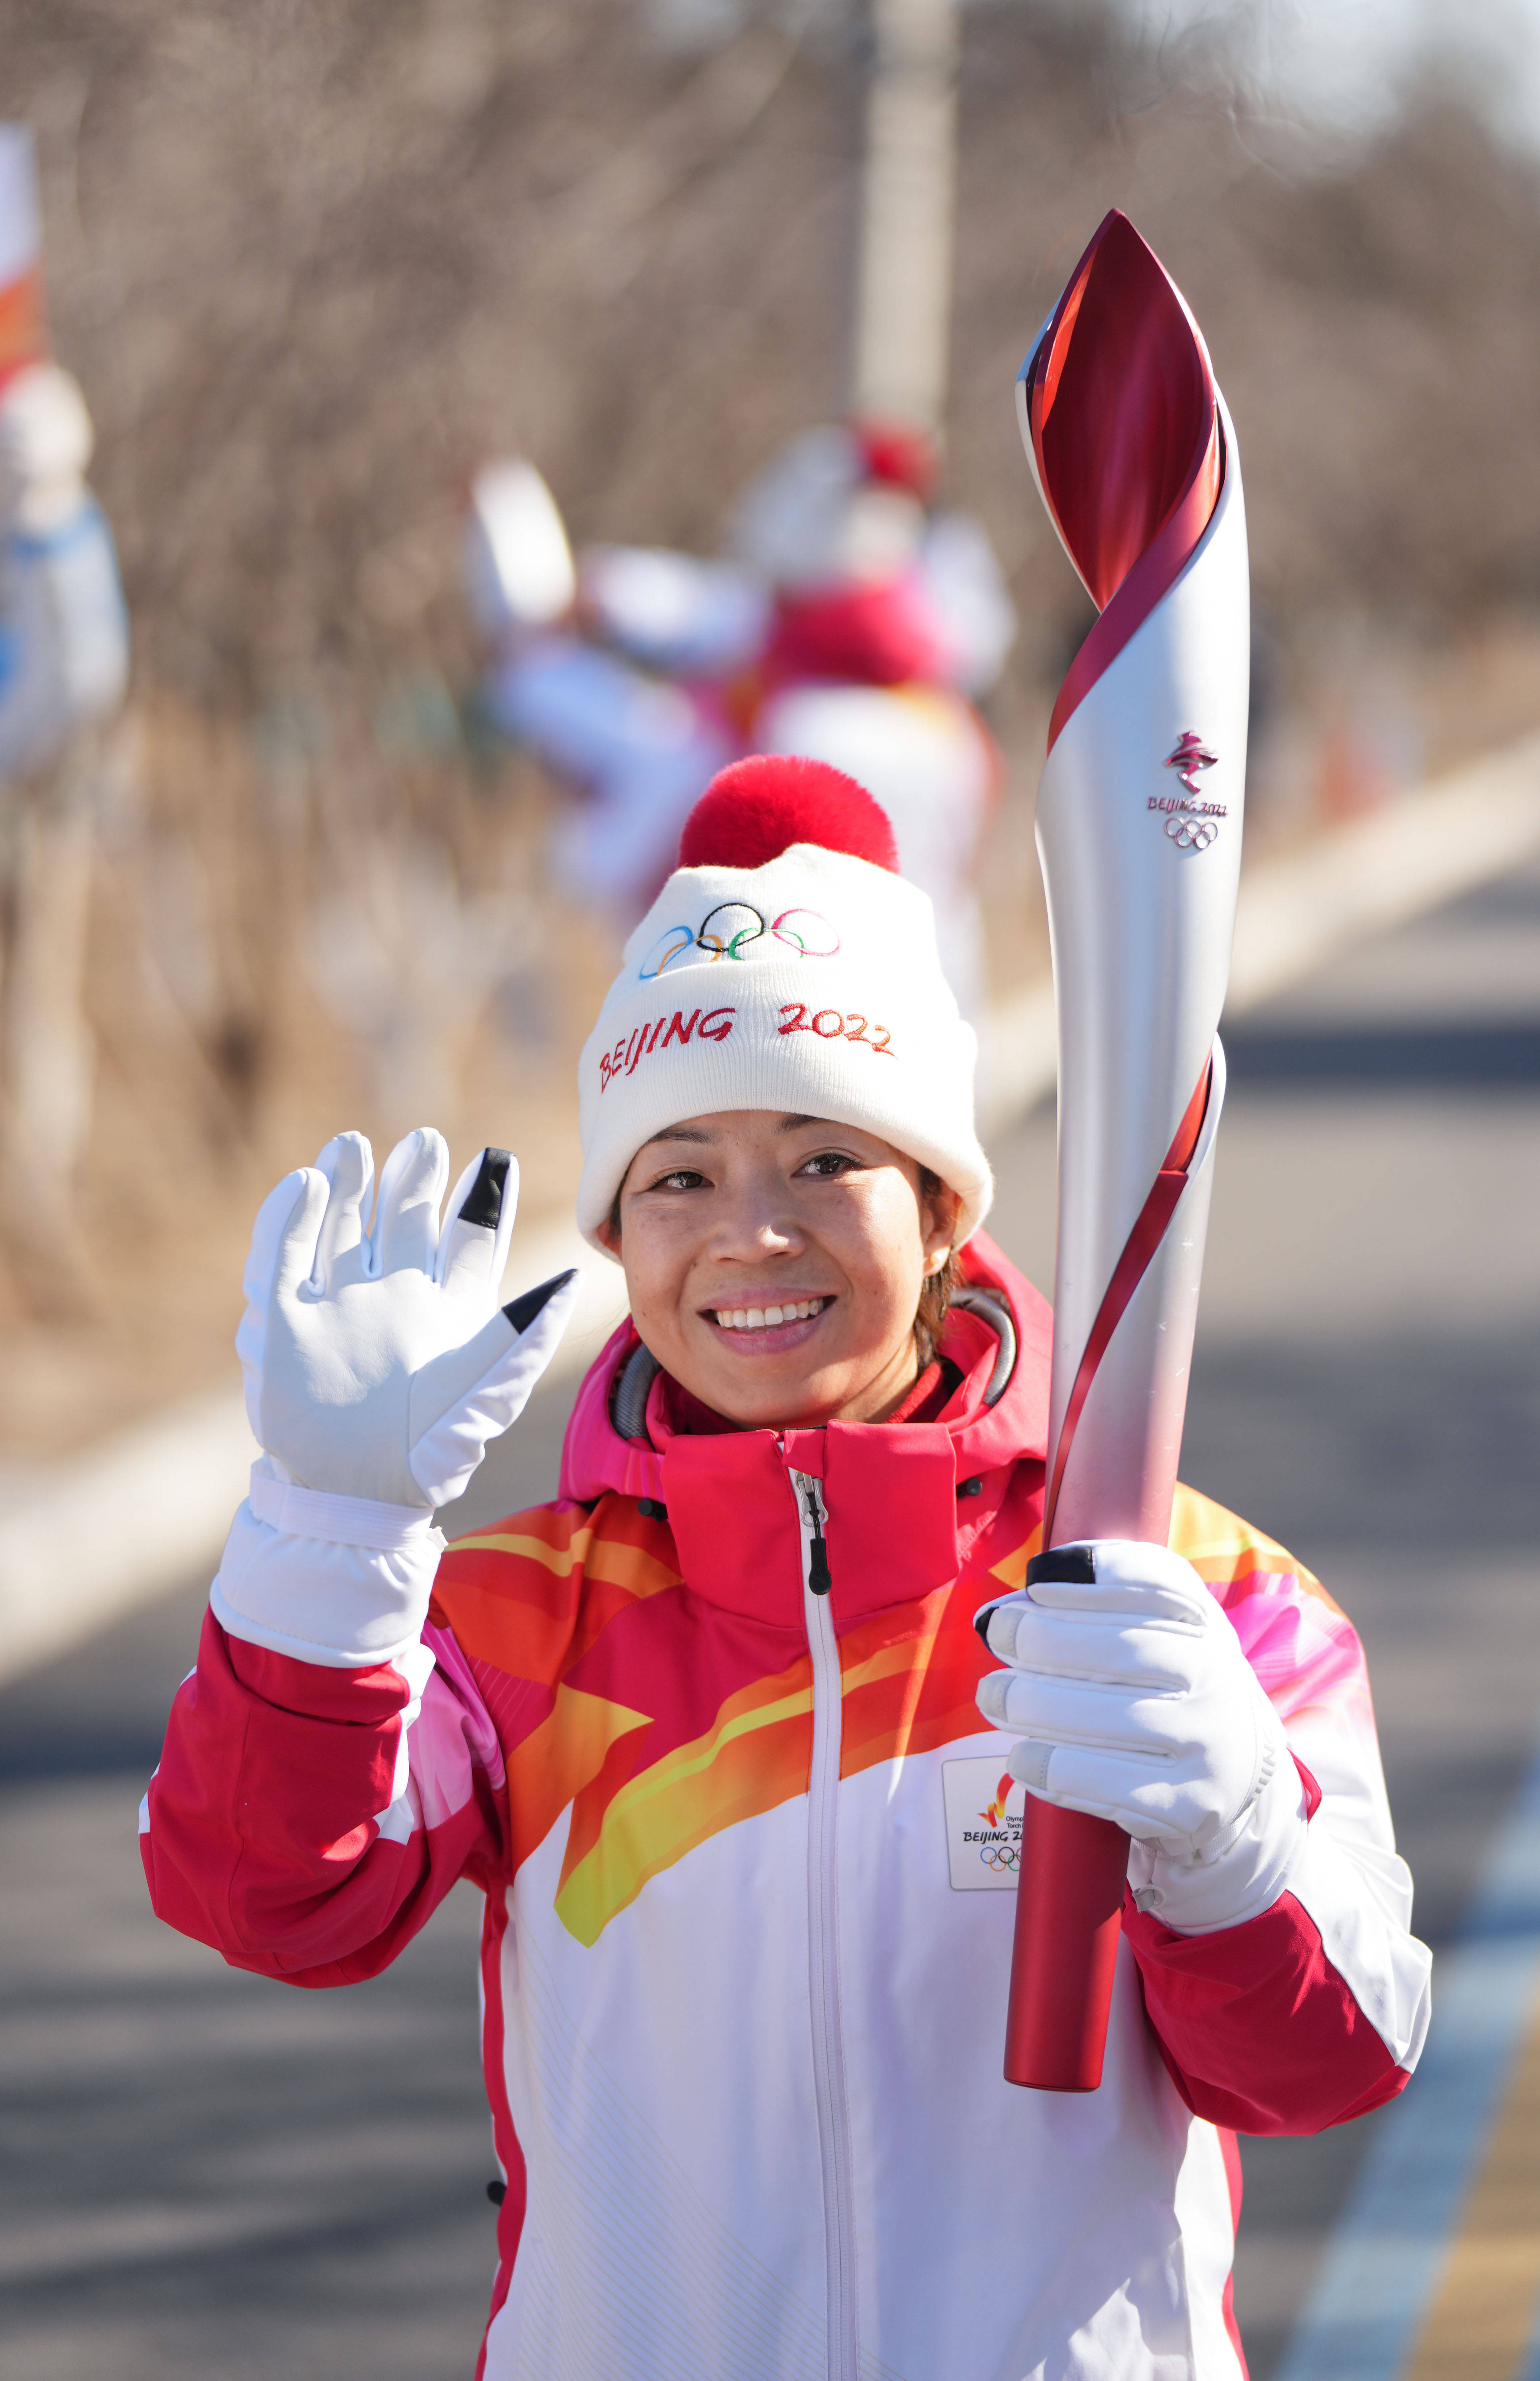 北京2022年冬奥会将于2月4日开幕2月2日,火炬手张忠德在火炬传递中